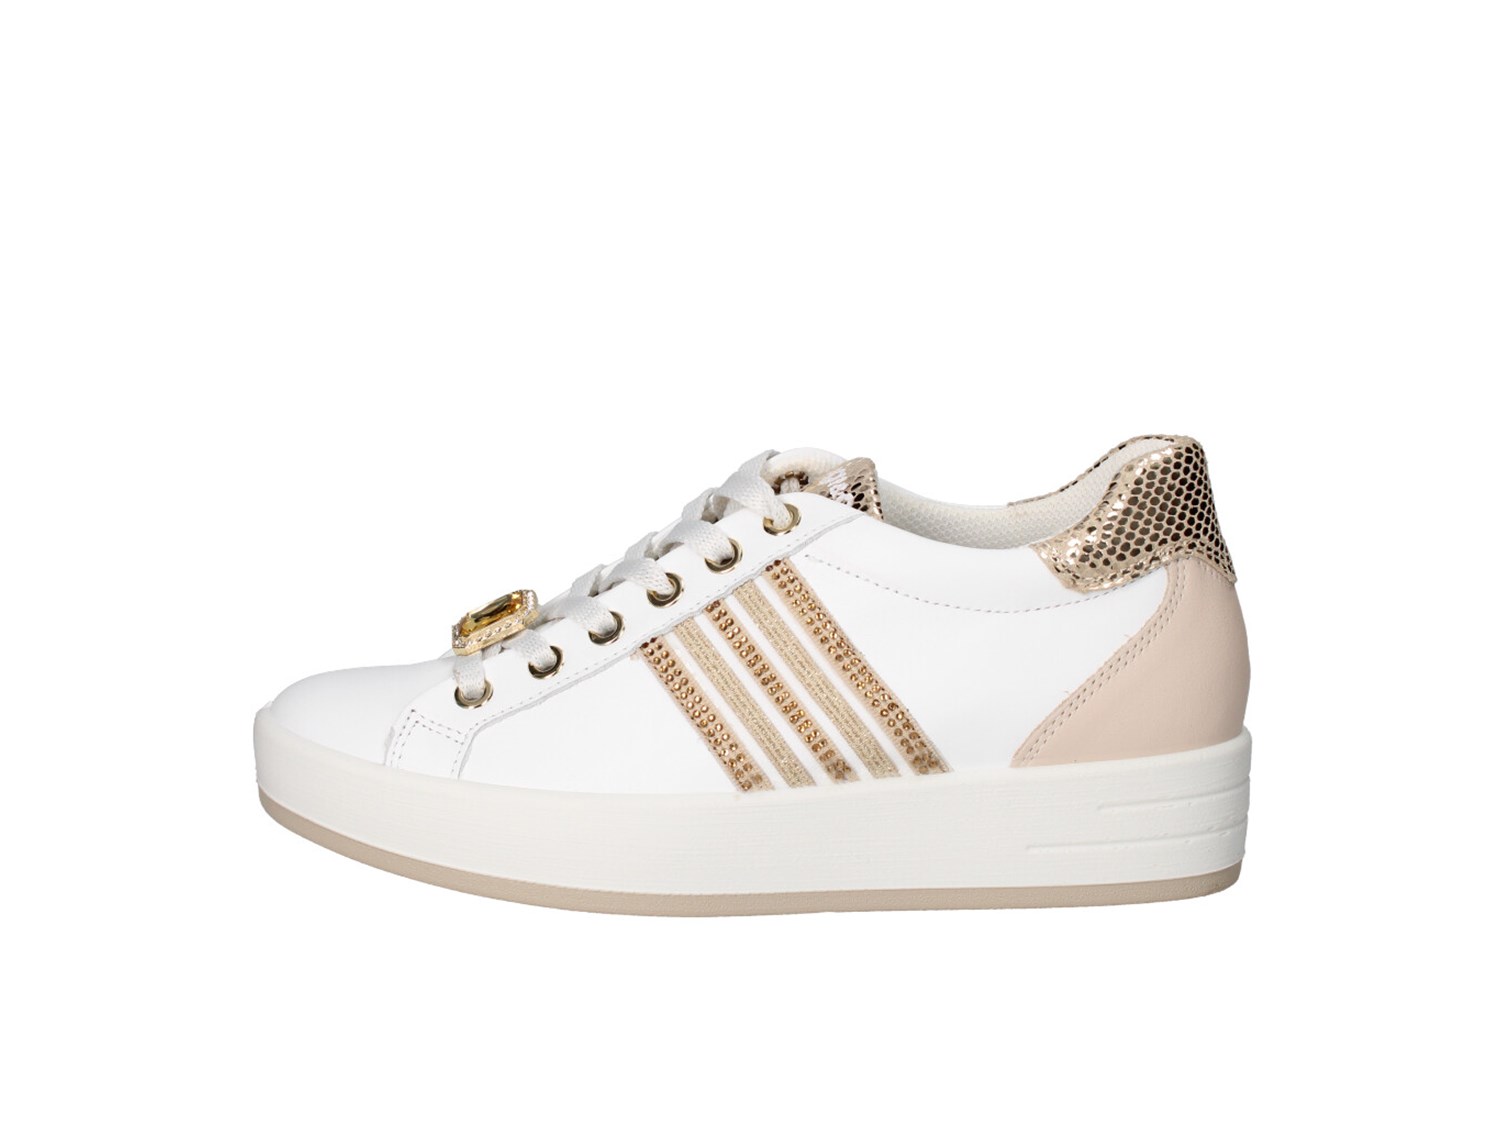 Igi&co 5657211 Bianco Nude E Oro Scarpe Donna Sneakers